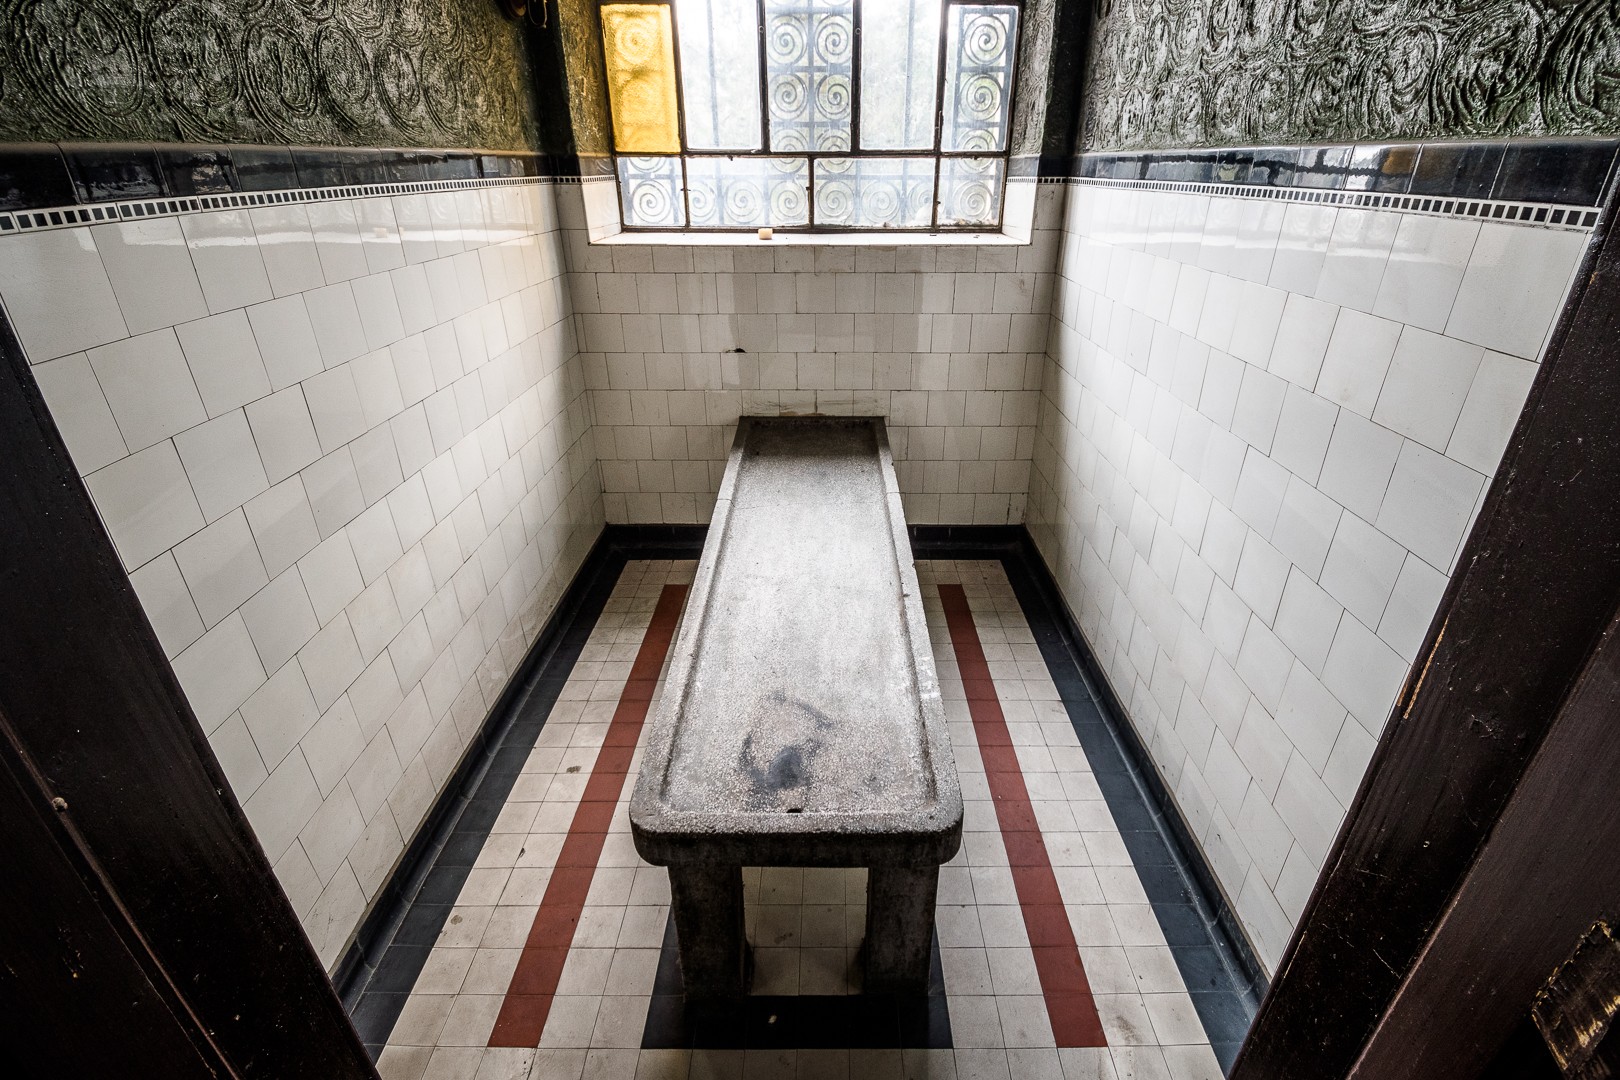 Camera funerara - Crematoriul Cenusa